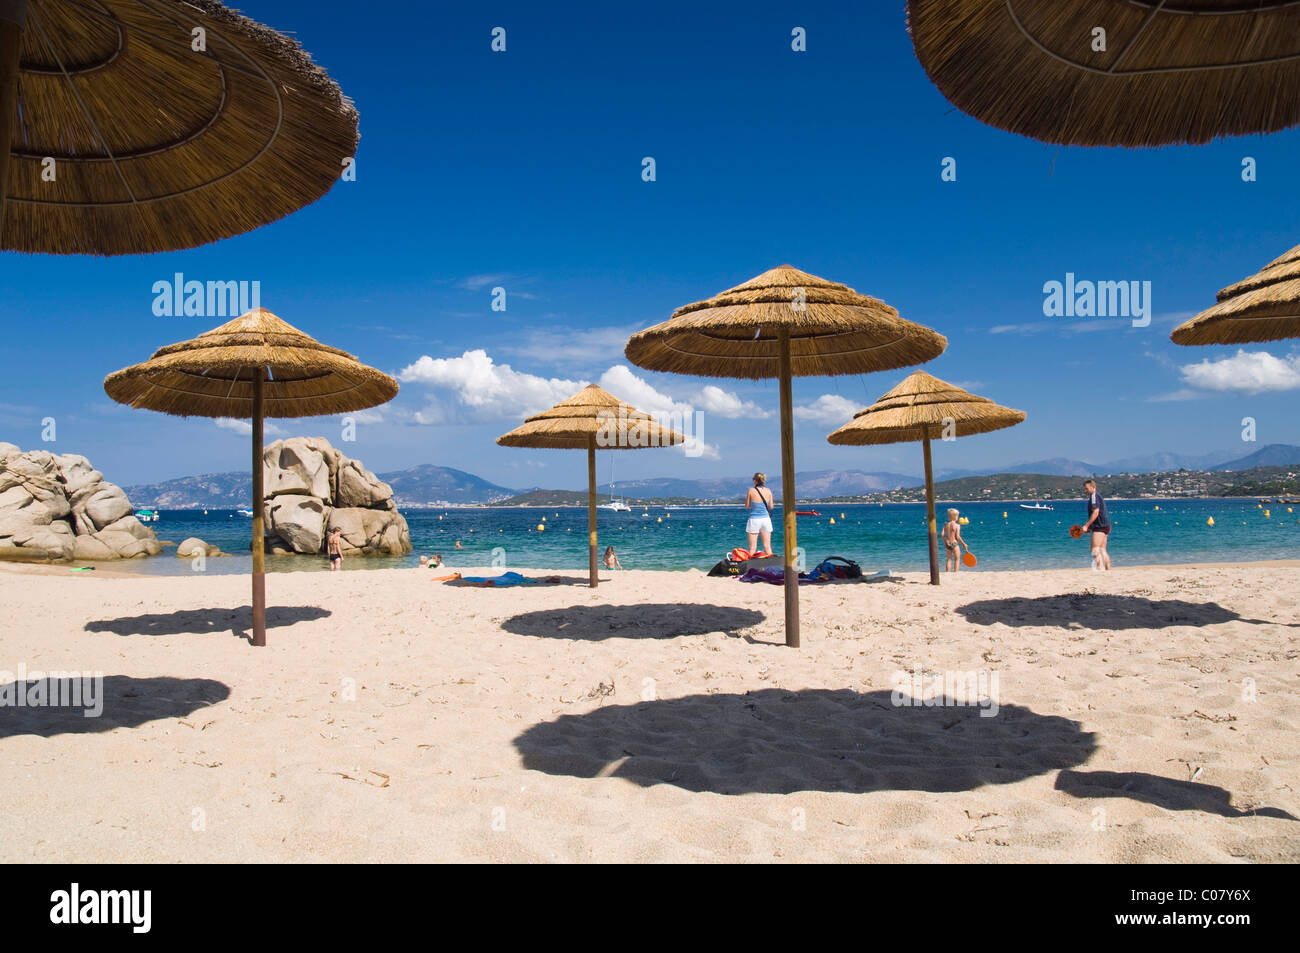 Ombrelloni sulla spiaggia, Plage de Verghia, Golfo di Ajaccio, Corsica, Francia, Europa Foto Stock